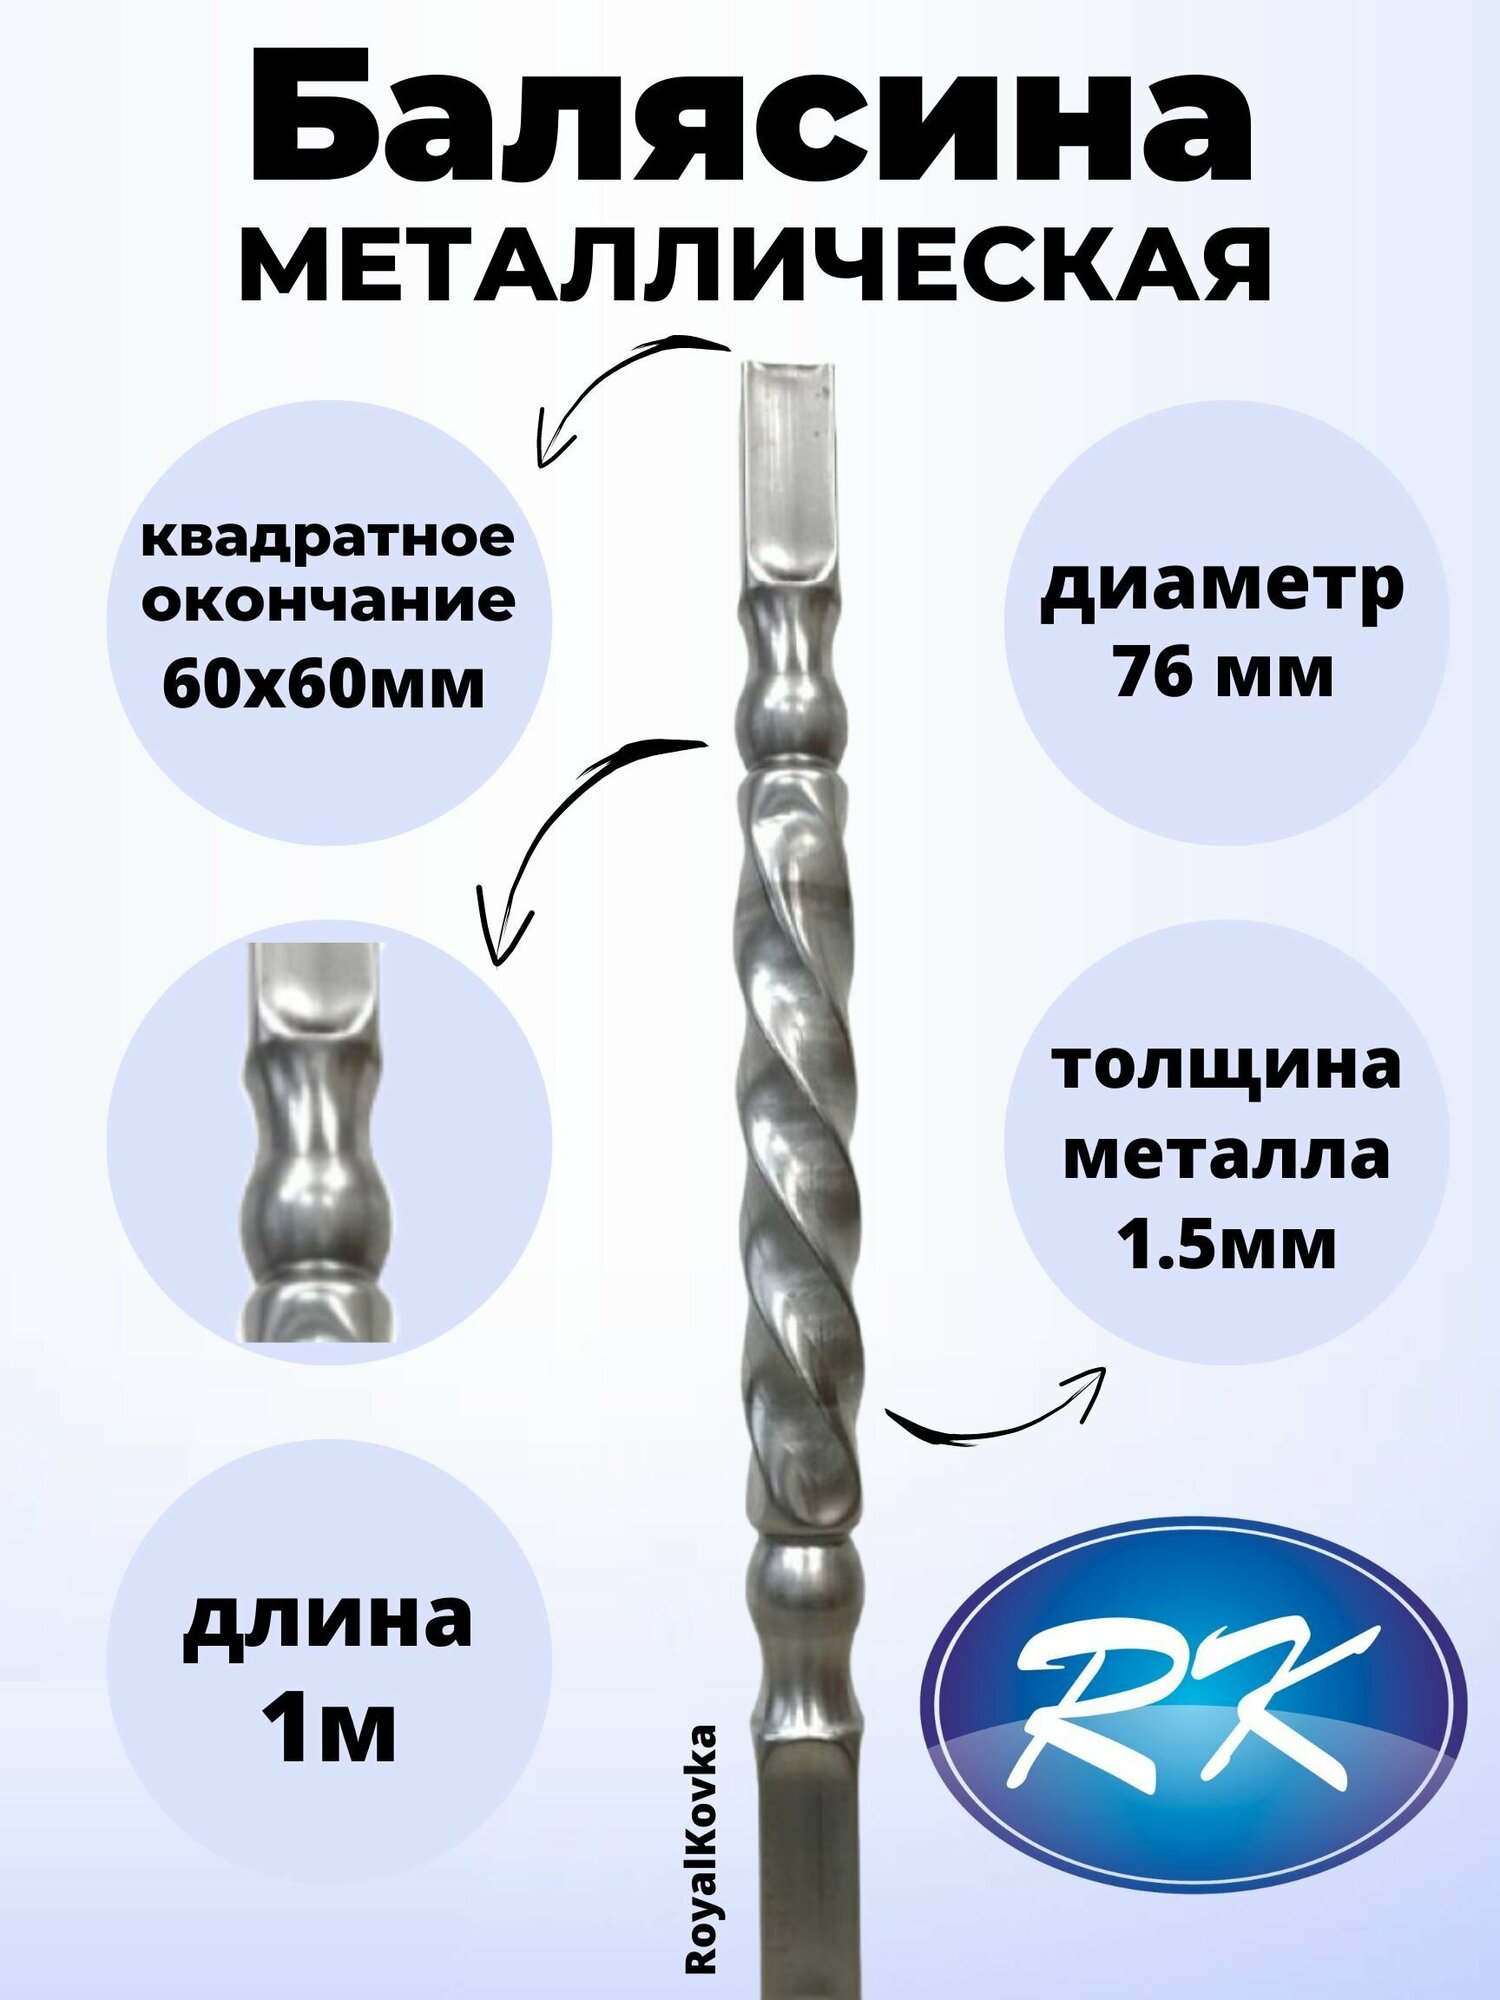 Балясина кованая металлическая Royal Kovka диаметр 76 мм квадратные окончания 60х60 мм арт. 60*60.3 В. КВ